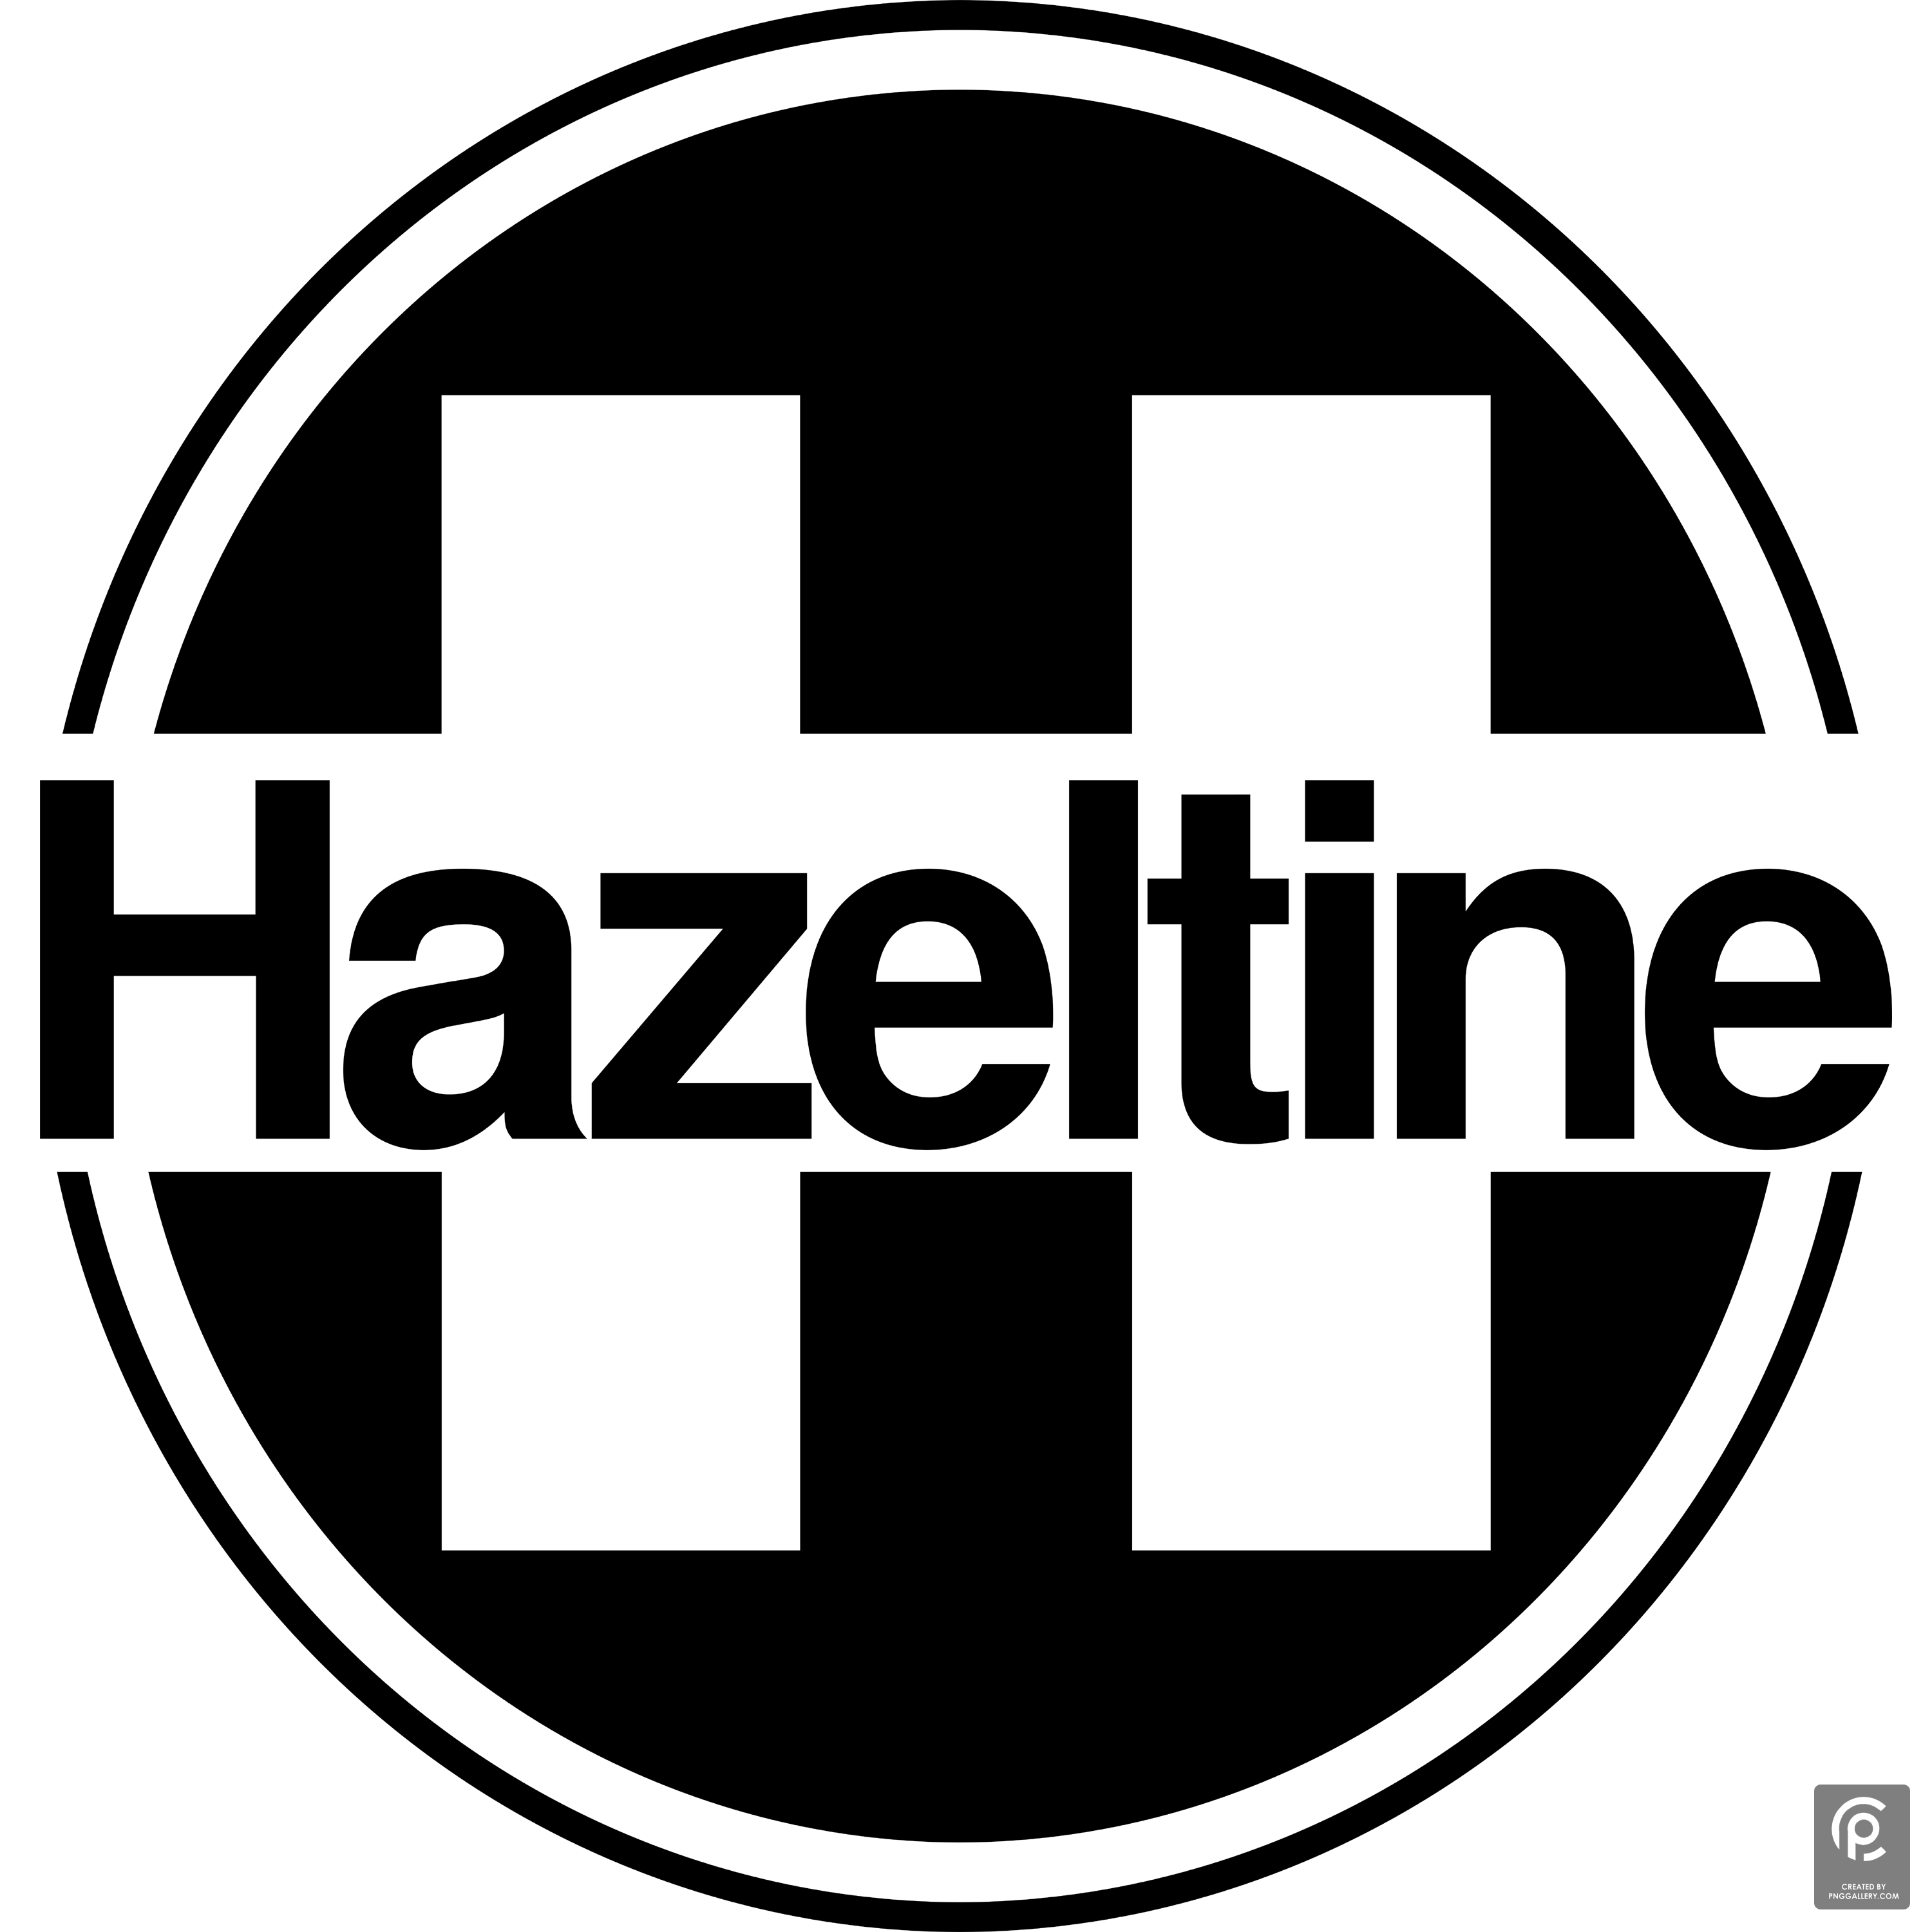 Hazeltine Corporation Logo Transparent Photo